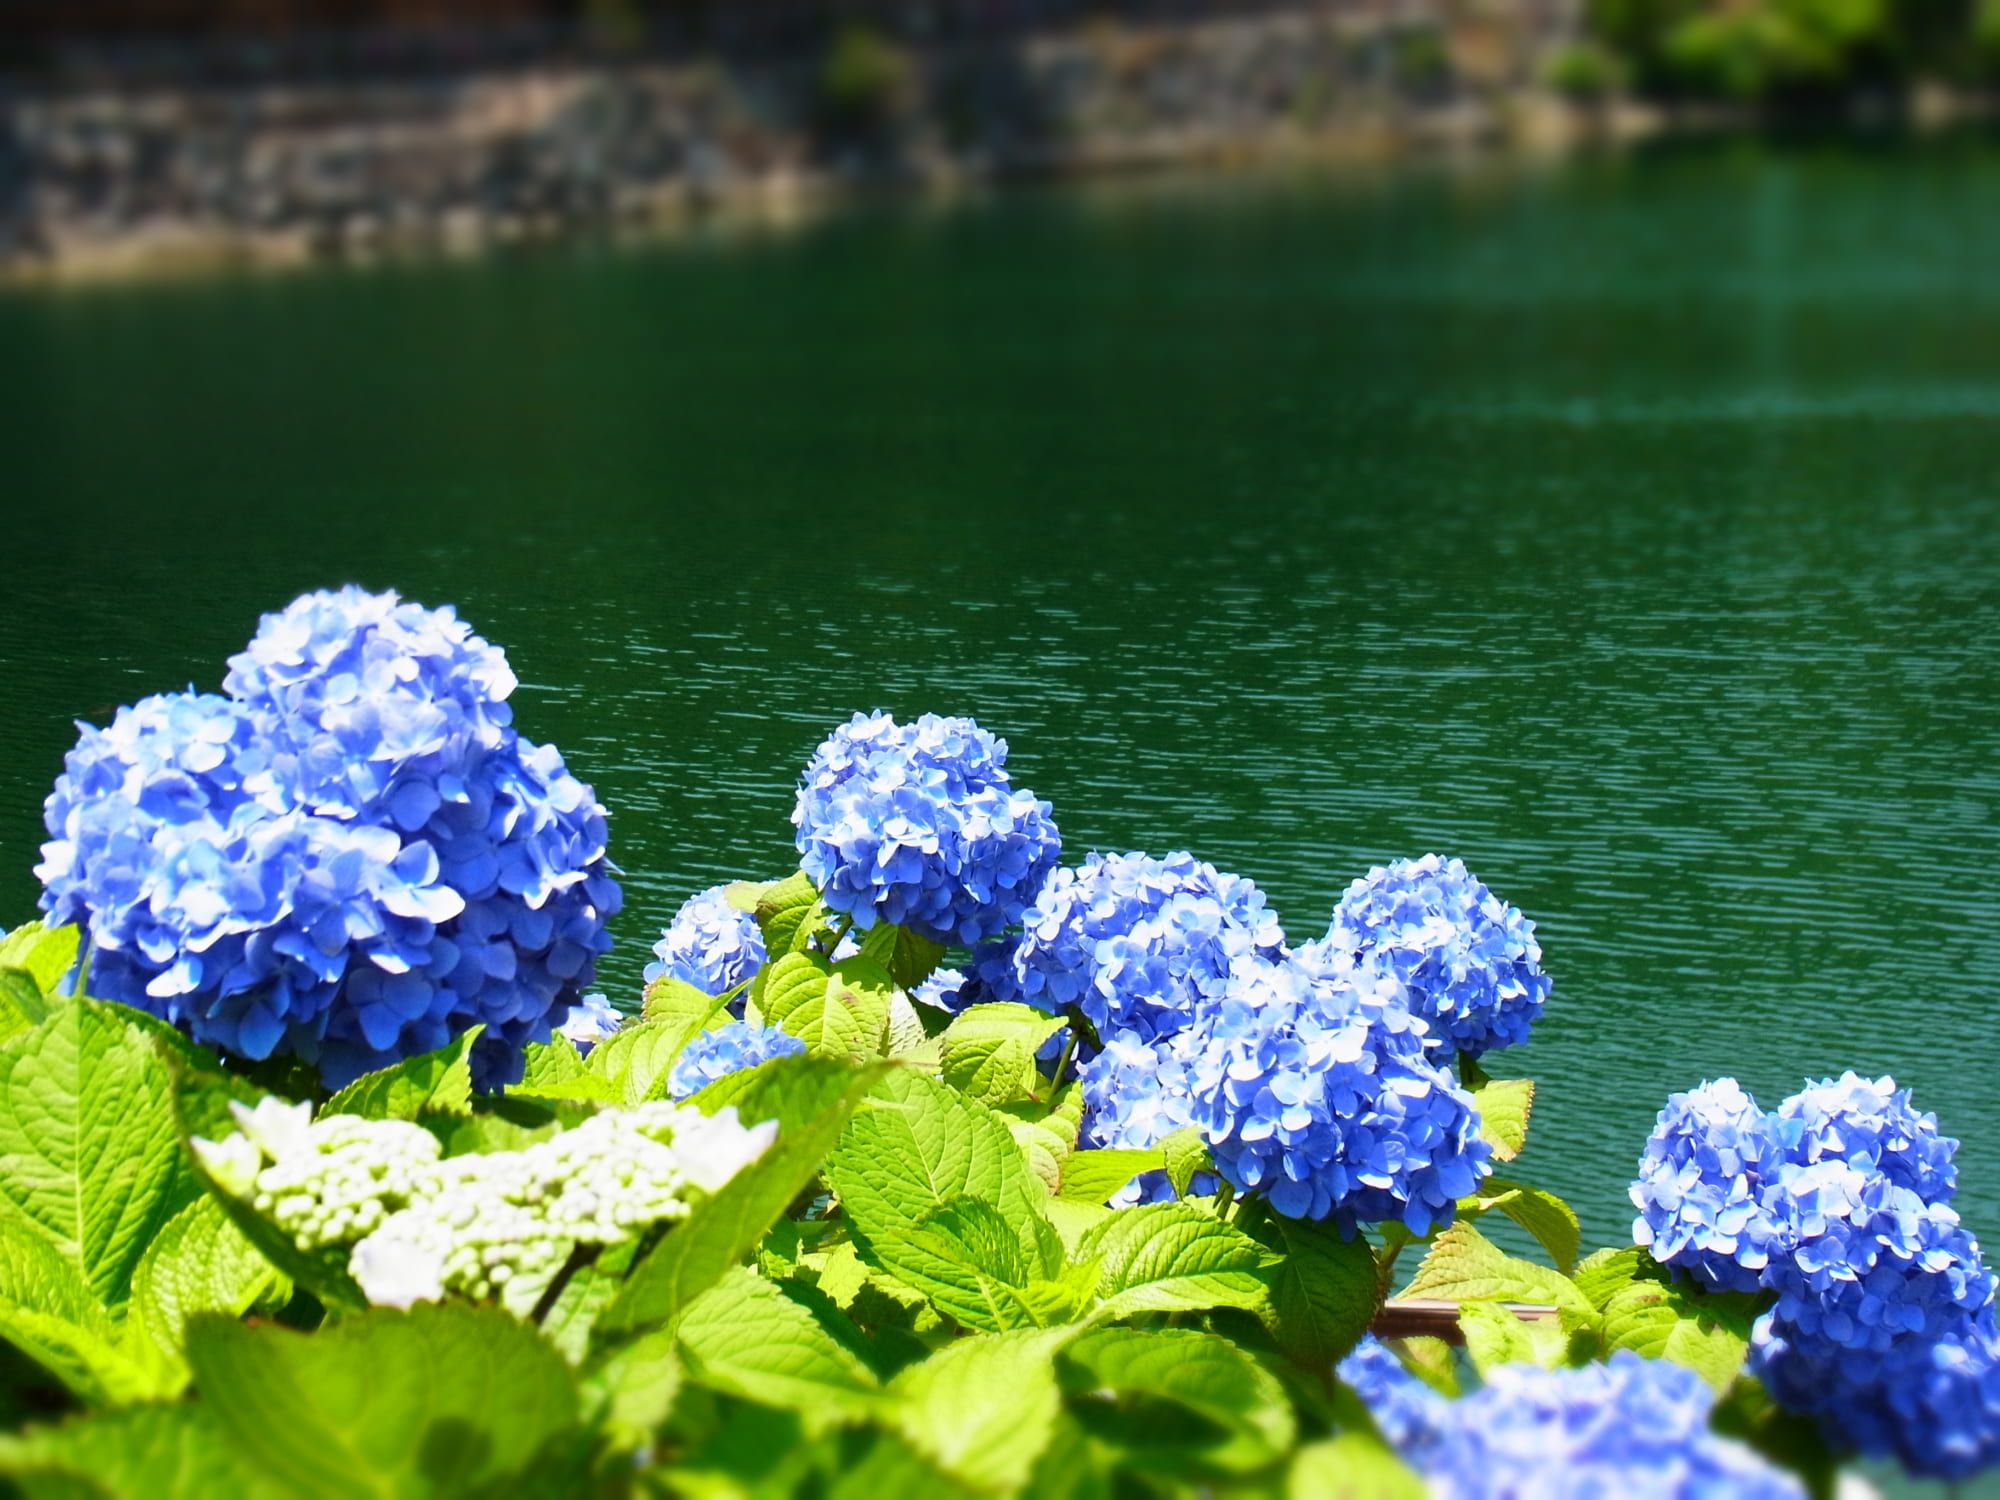 Kanagawa là một trong những địa điểm nổi tiếng nhất để ngắm hoa cẩm tú cầu đẹp. Nếu bạn yêu thích những cảnh quan thiên nhiên tuyệt đẹp, hãy đến Kanagawa vào mùa hoa cẩm tú cầu để cùng trải nghiệm.